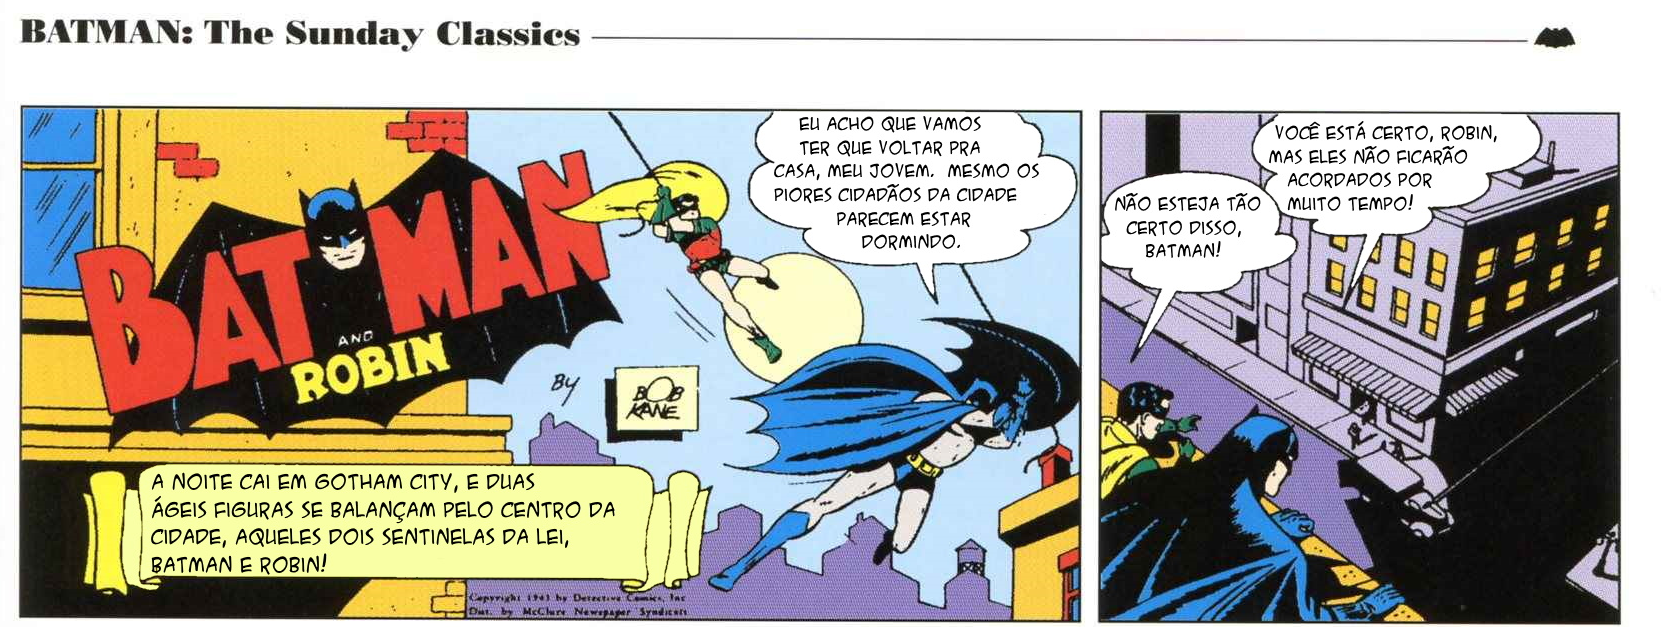 5 - Batman Vintage 1a